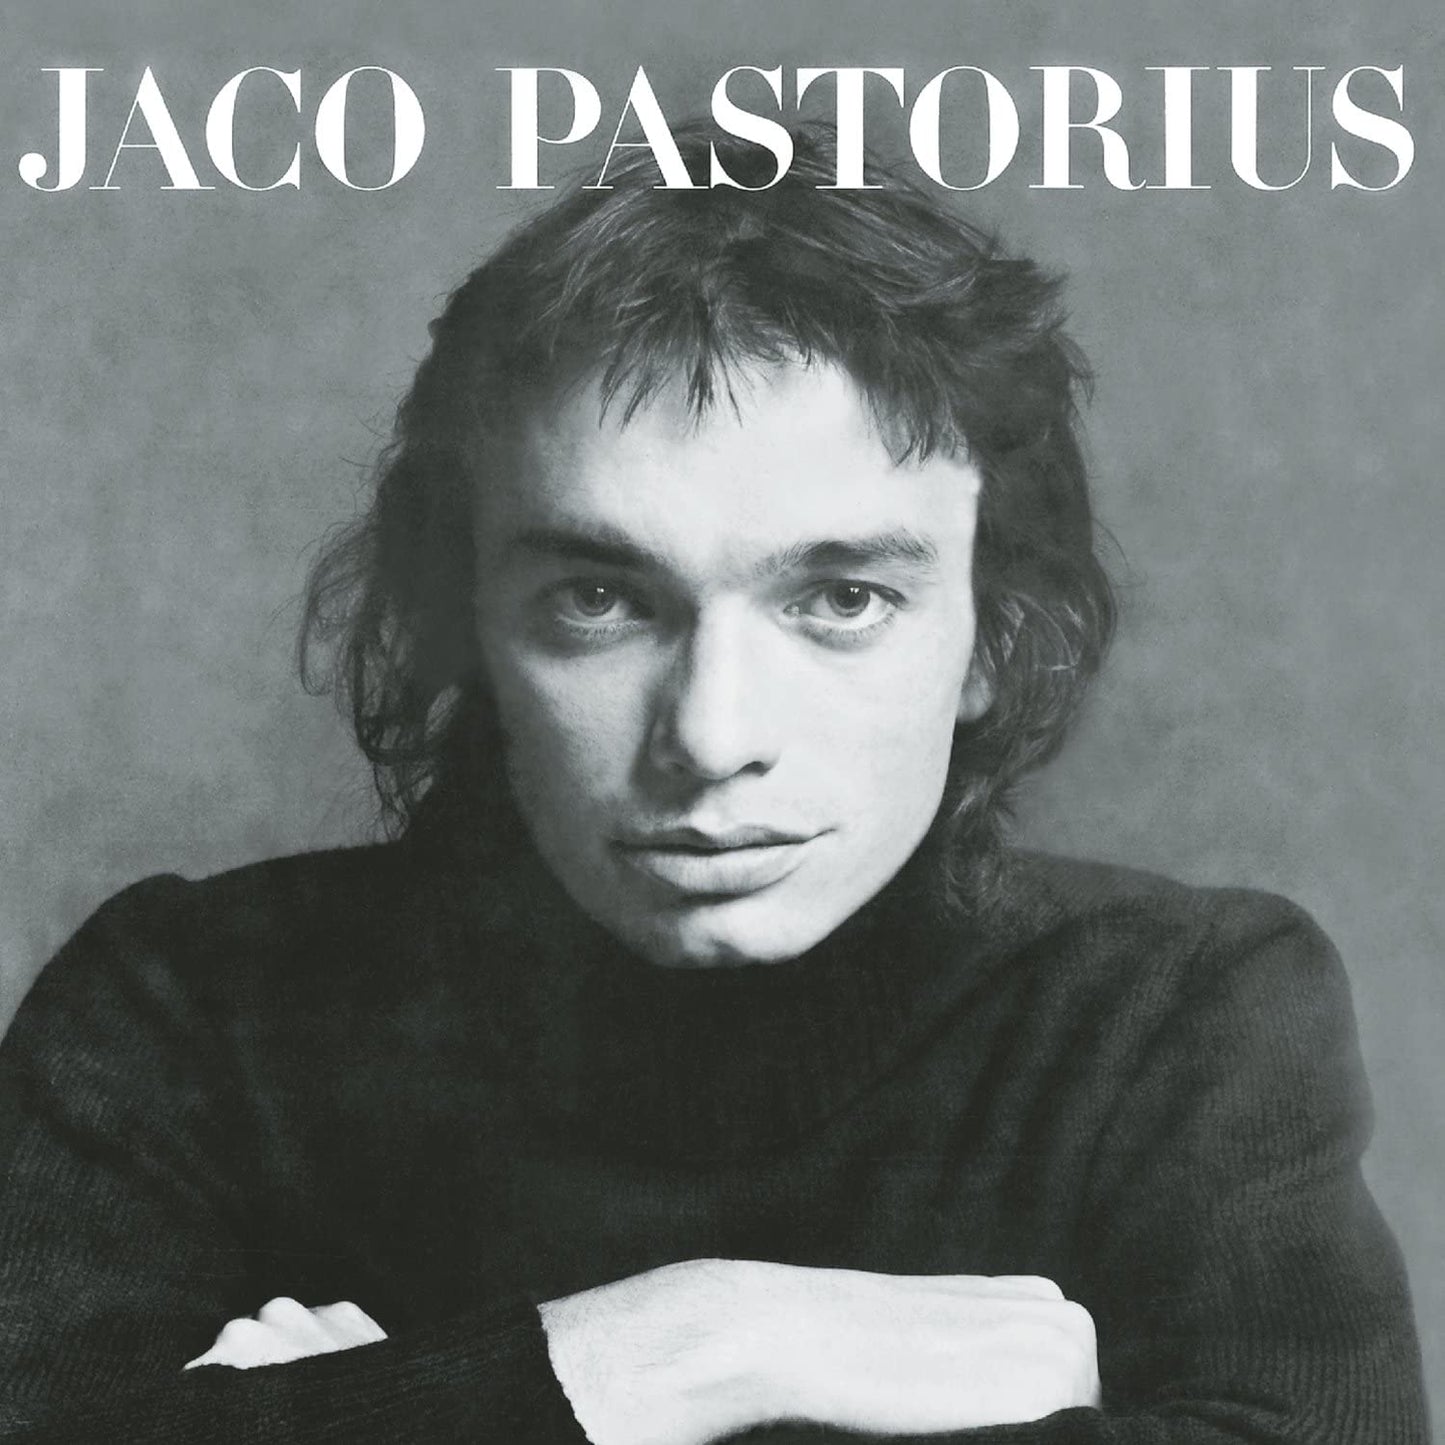 Pastorius, Jaco/Jaco Pastorius [CD]